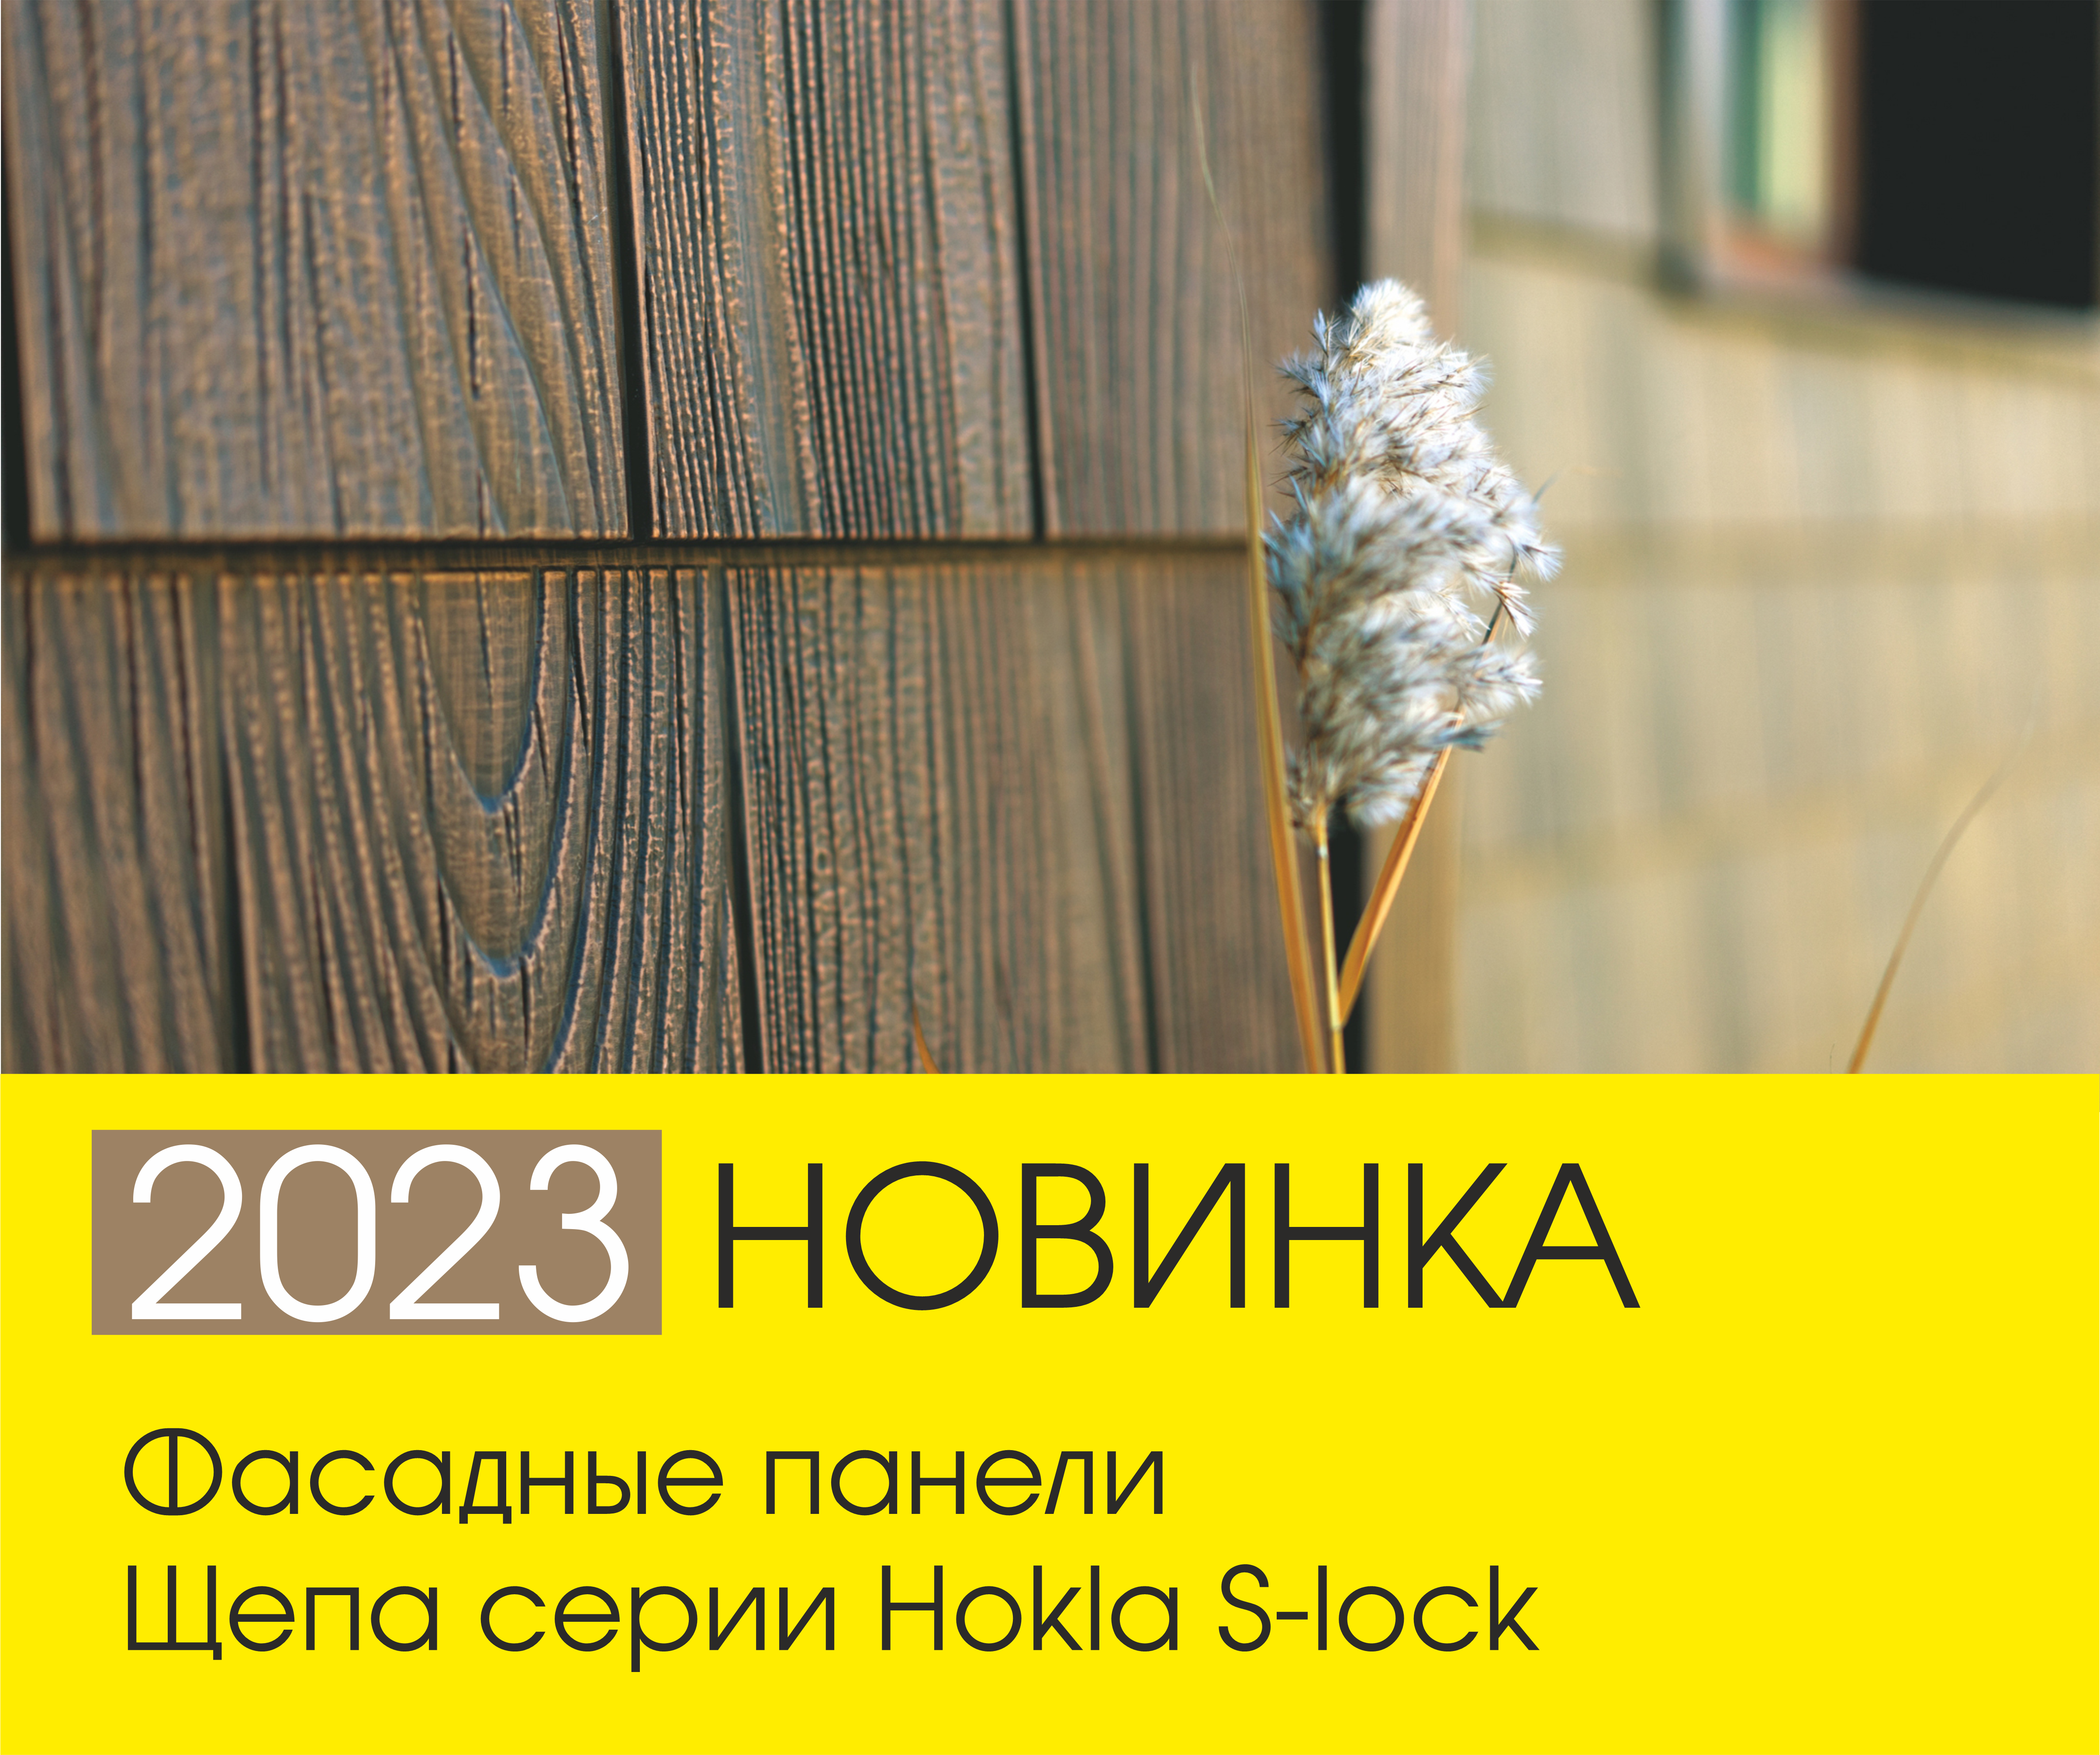 Новинка 2023! Щепа серии Hokla S-lock.